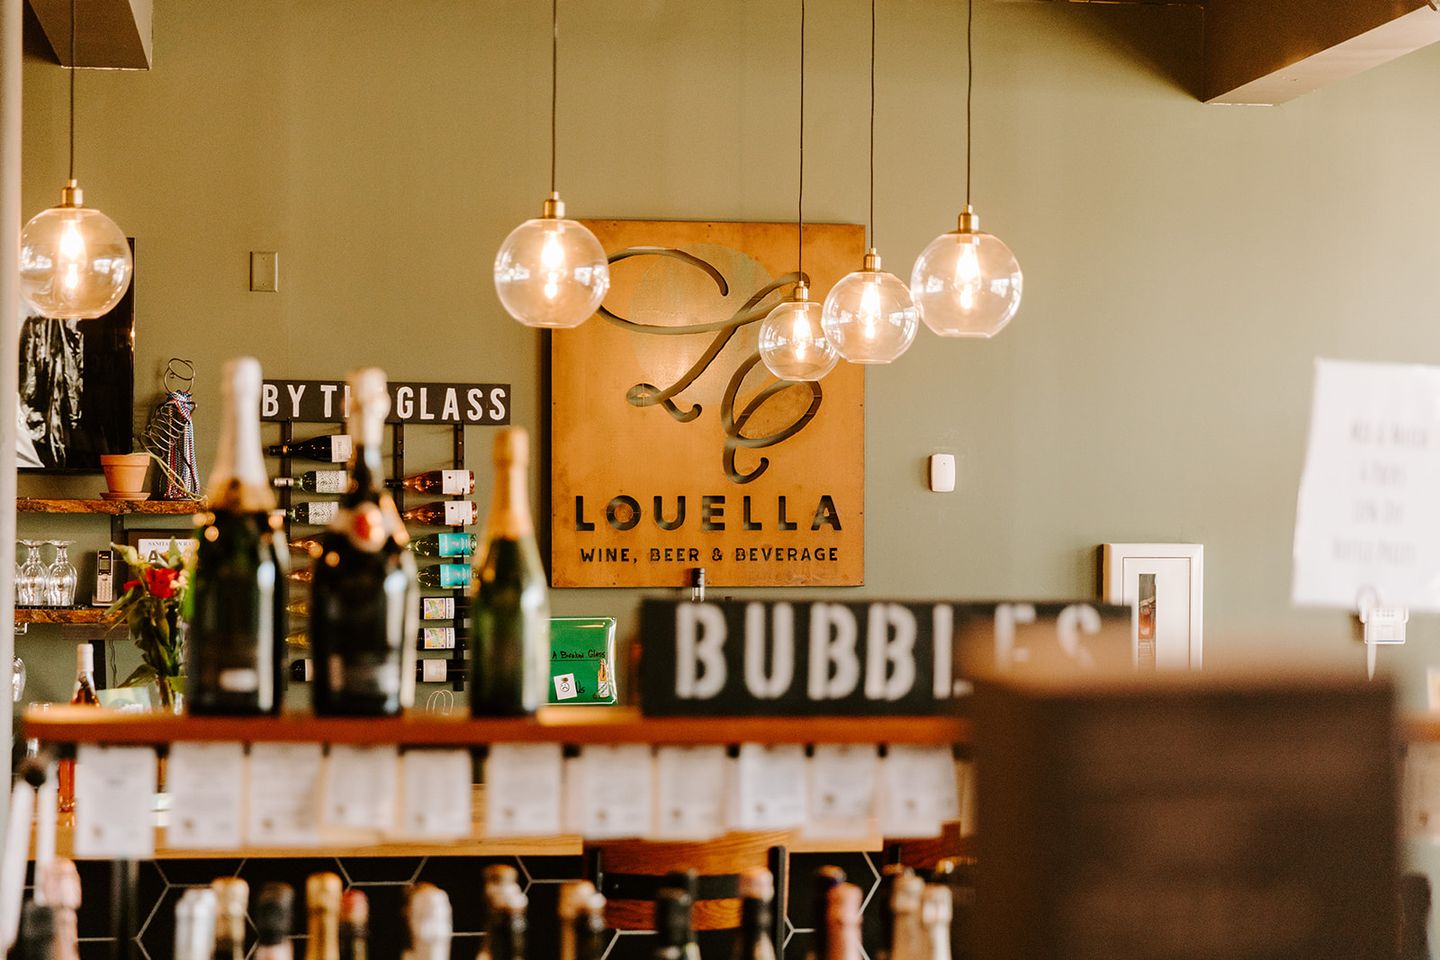 LouElla Wine, Beer & Beverage